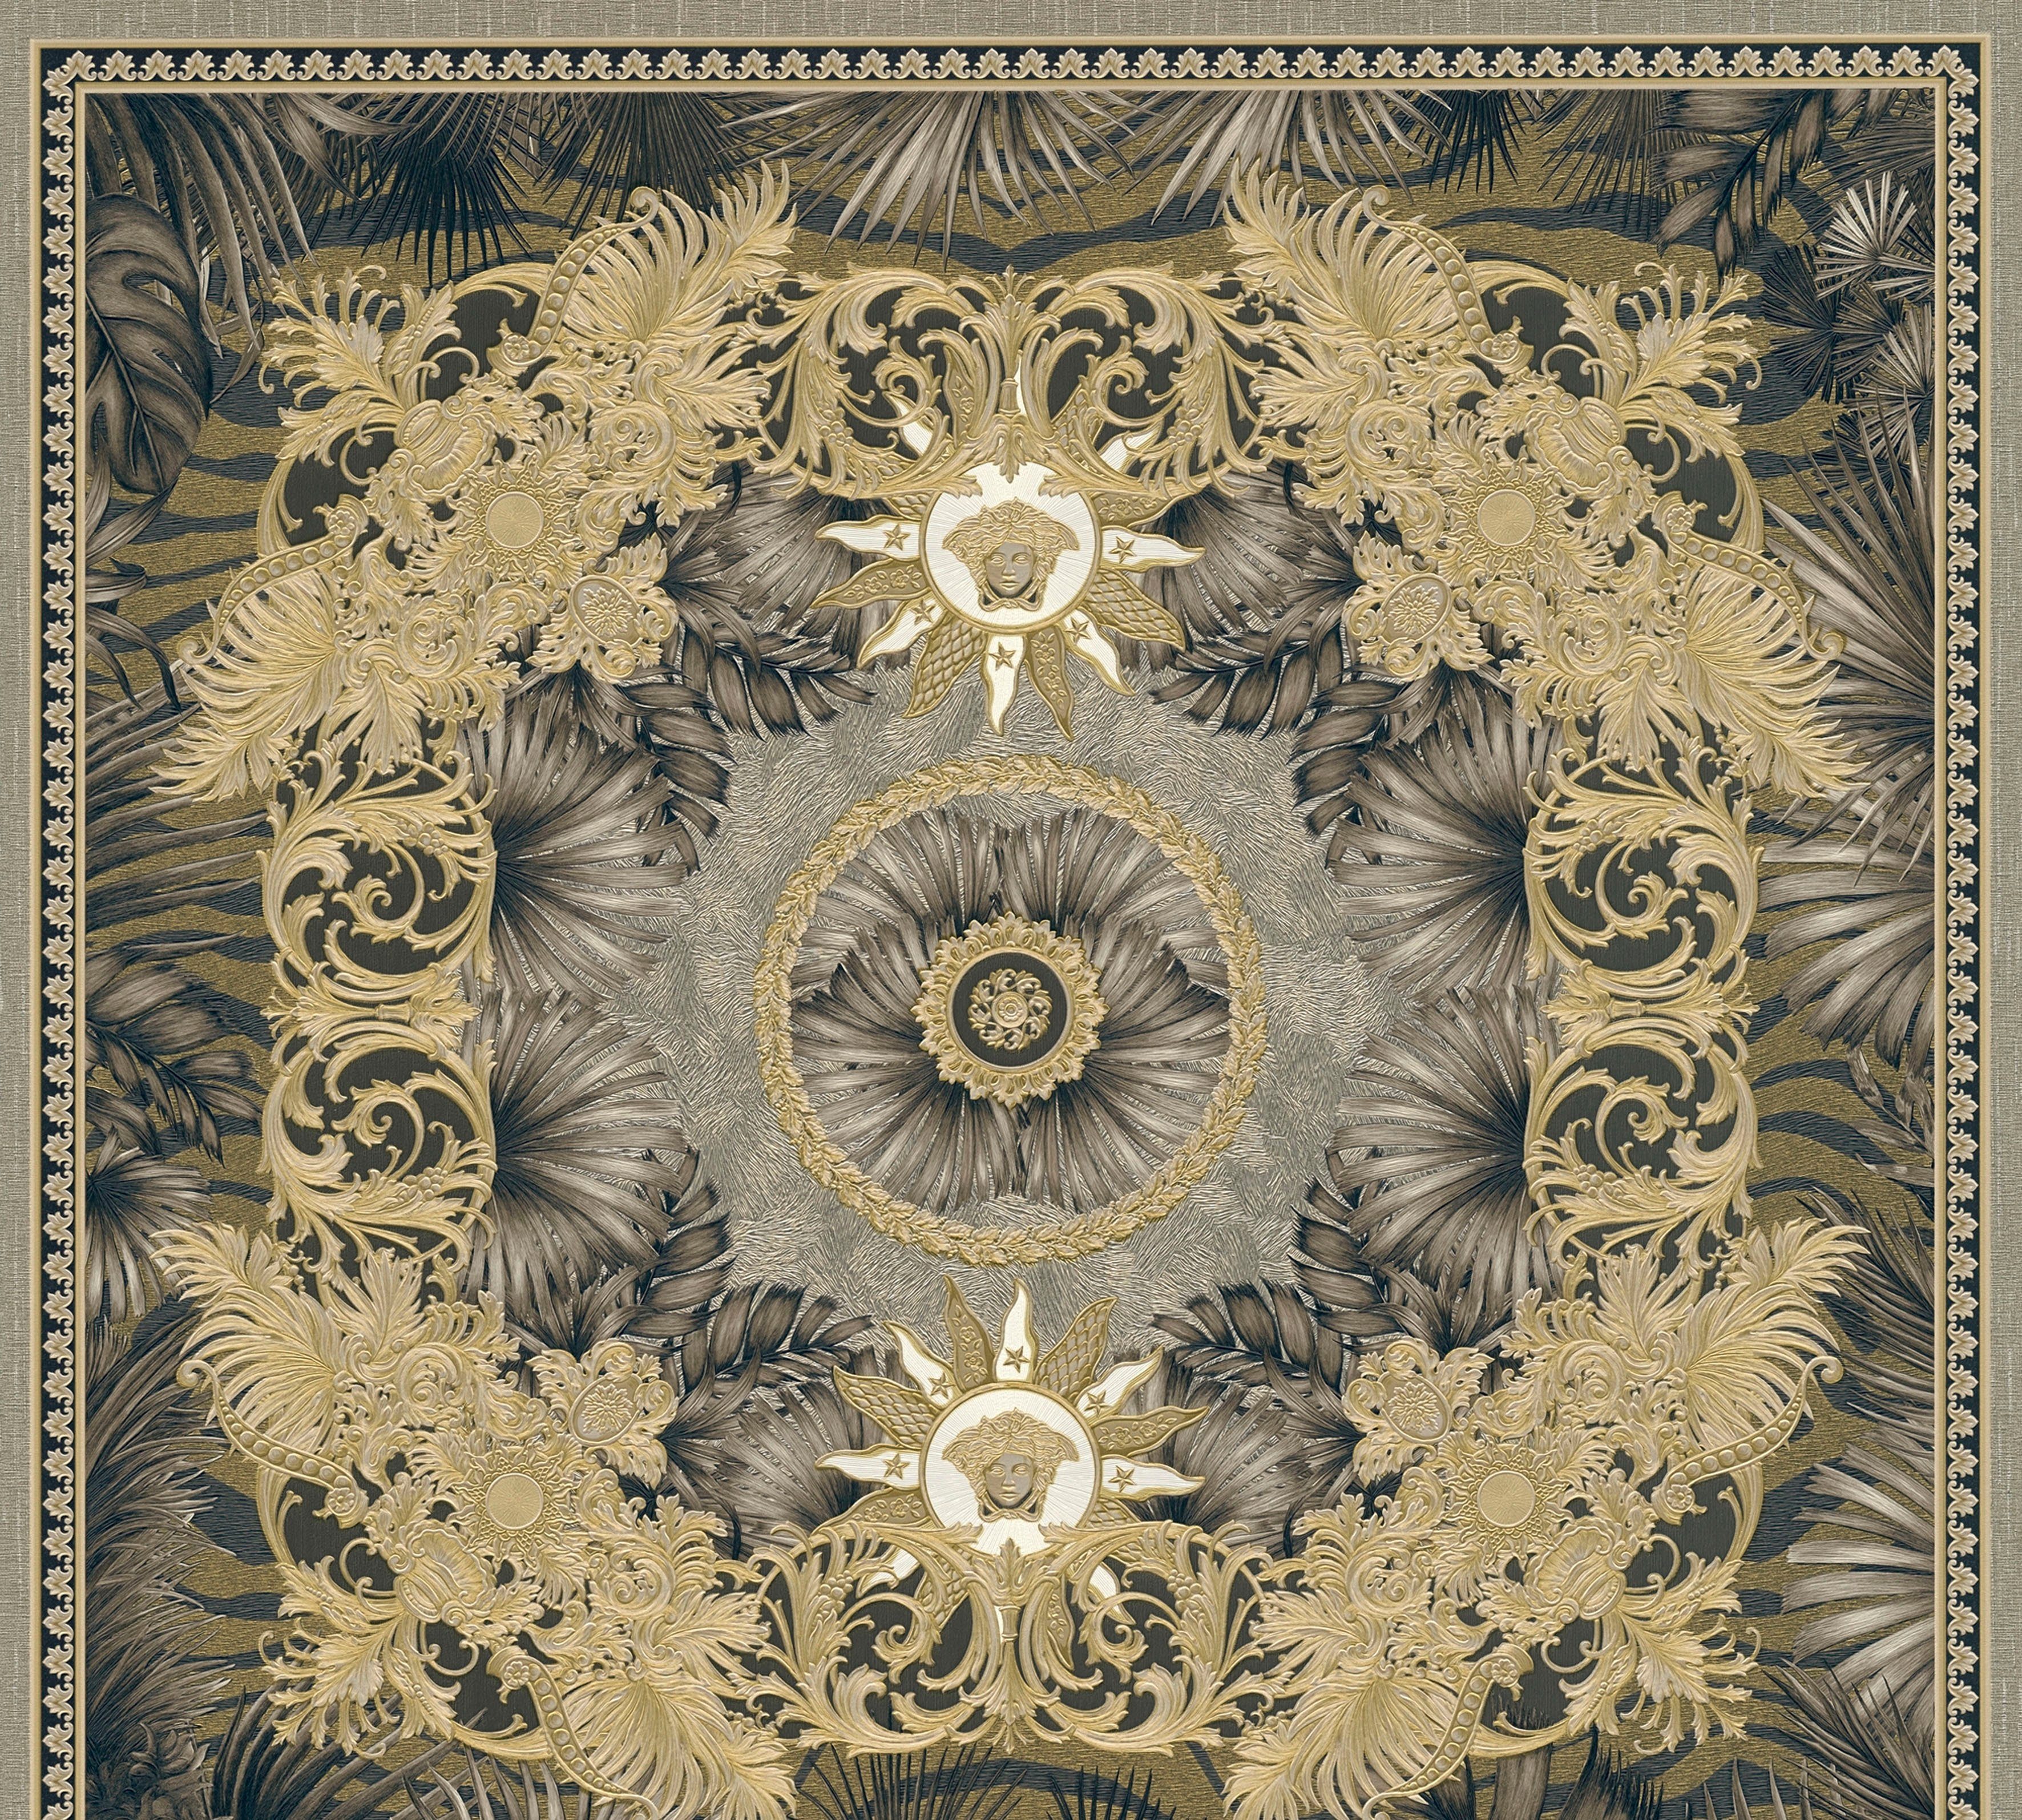 St), Design, Wallpaper leicht braun/goldfarben/silberfarben Vliestapete Versace 5 leicht Dschungel (1 Fliesen-Tapete strukturiert, auffallende Versace glänzend,